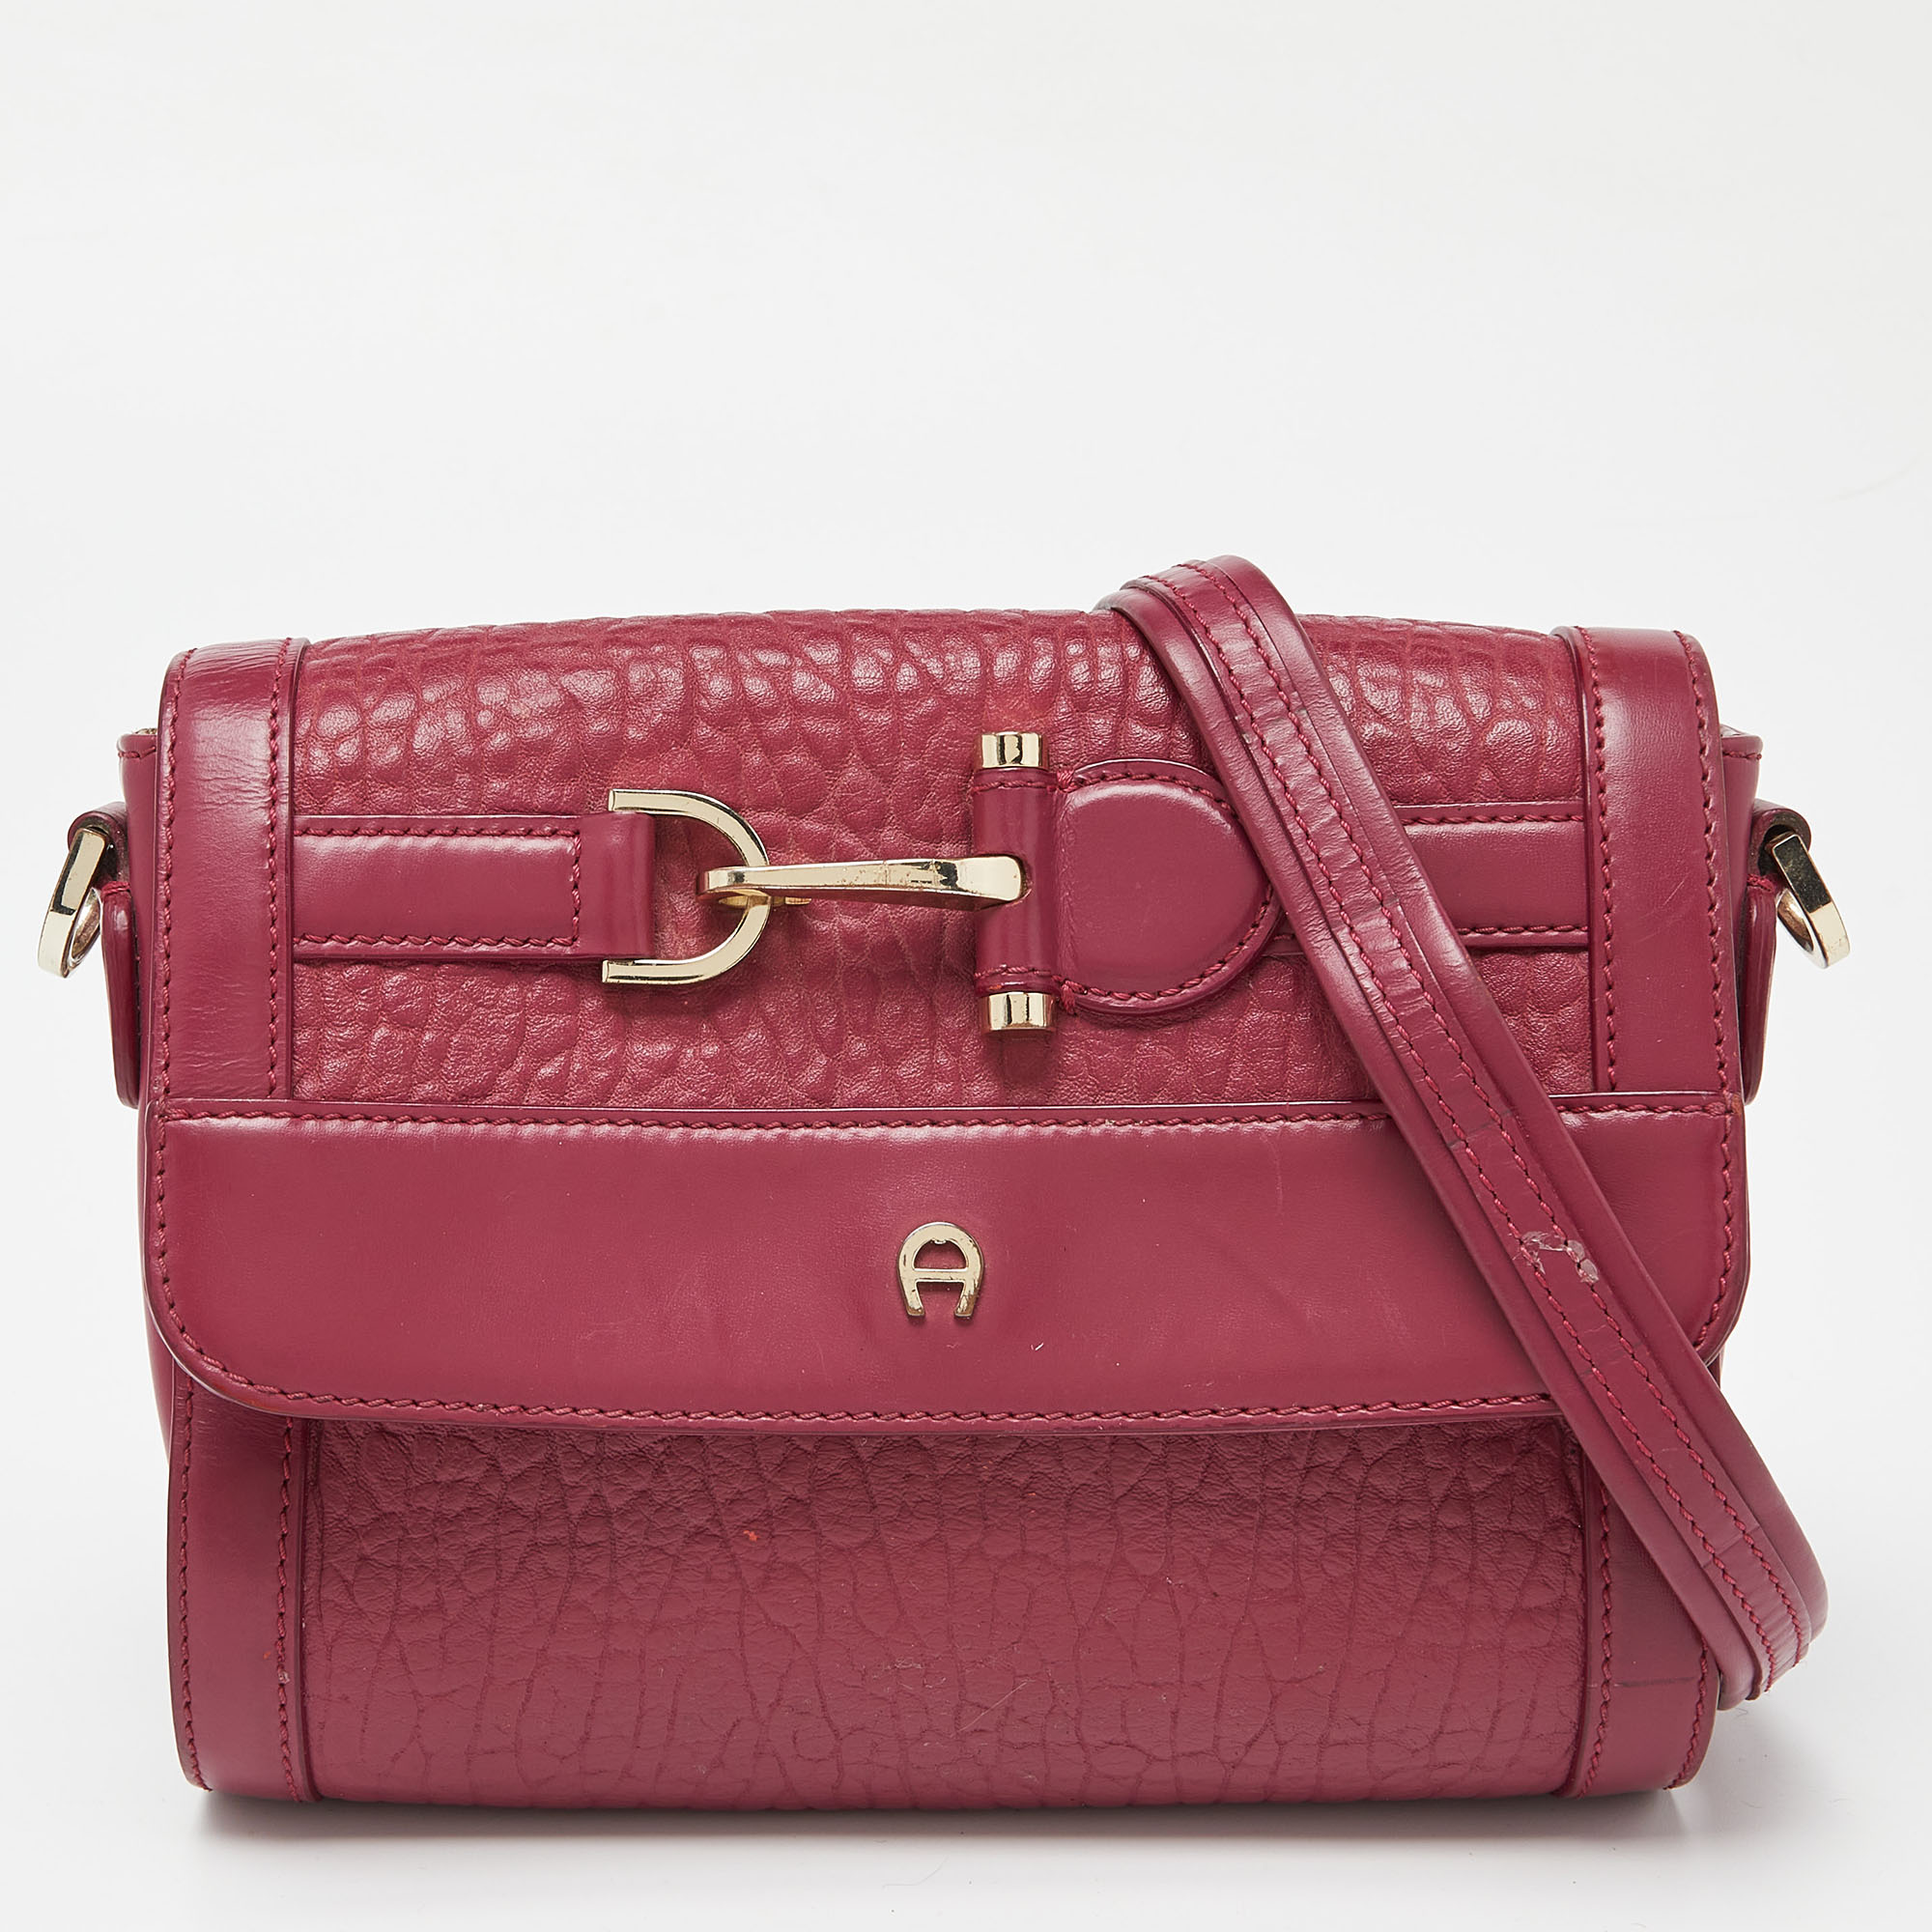 Pre-owned Aigner Pink Leather Flap Shoulder Bag